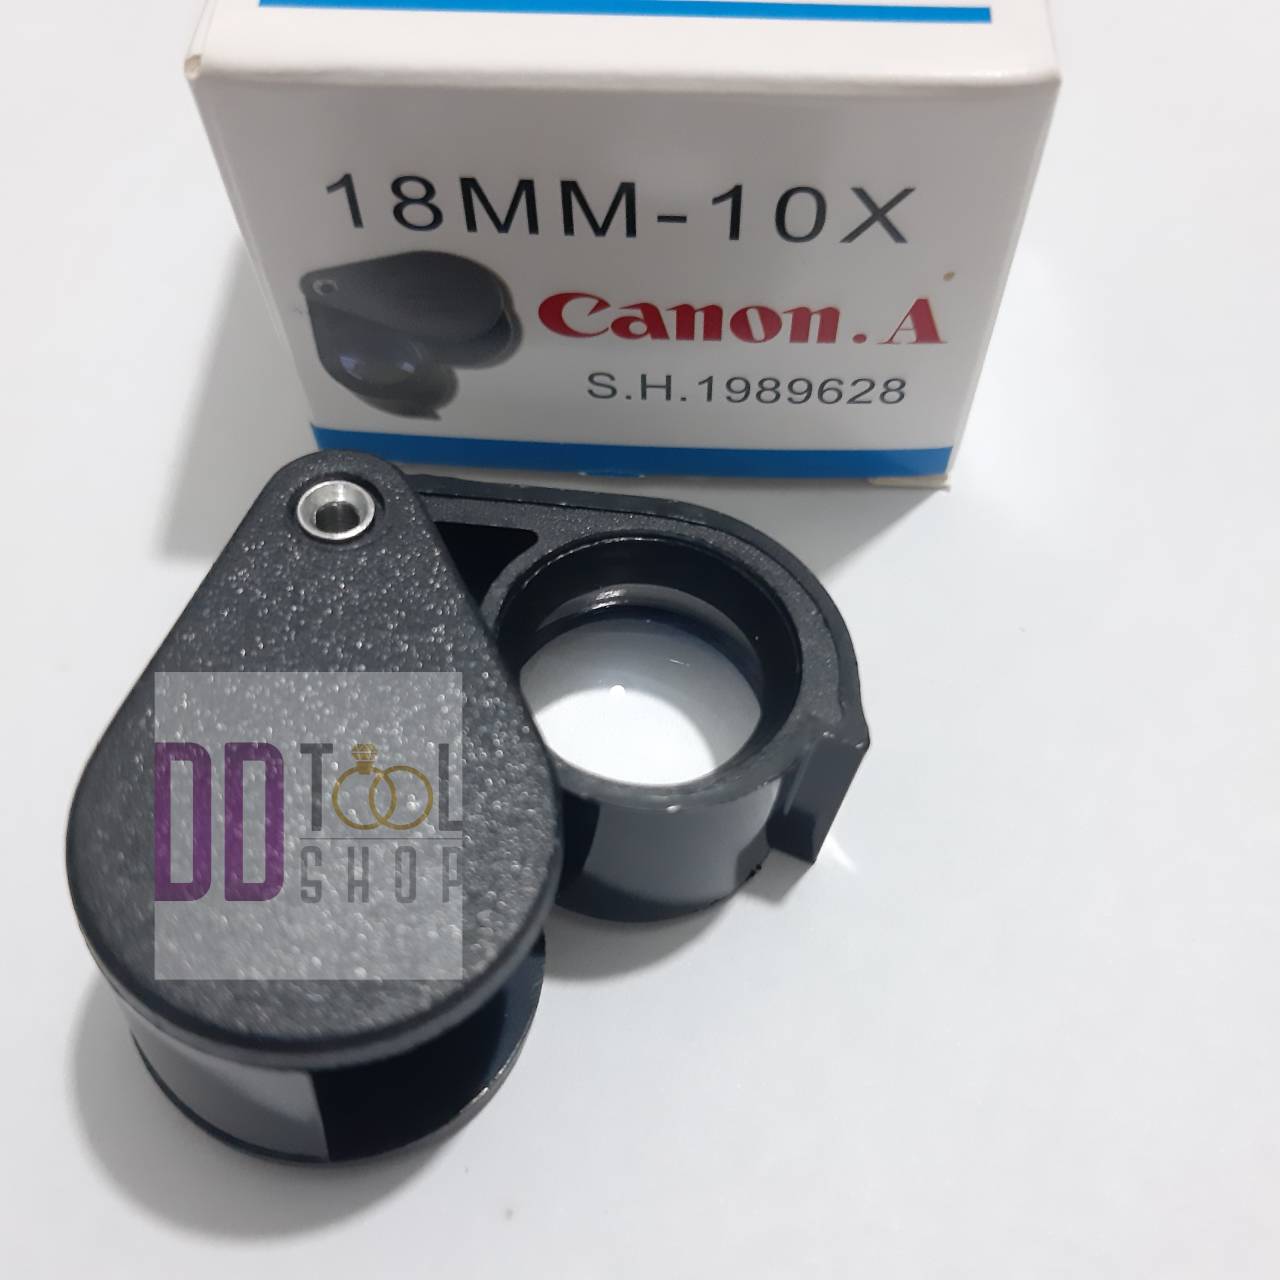 กล้องส่องพระ Canon S.H.1989628